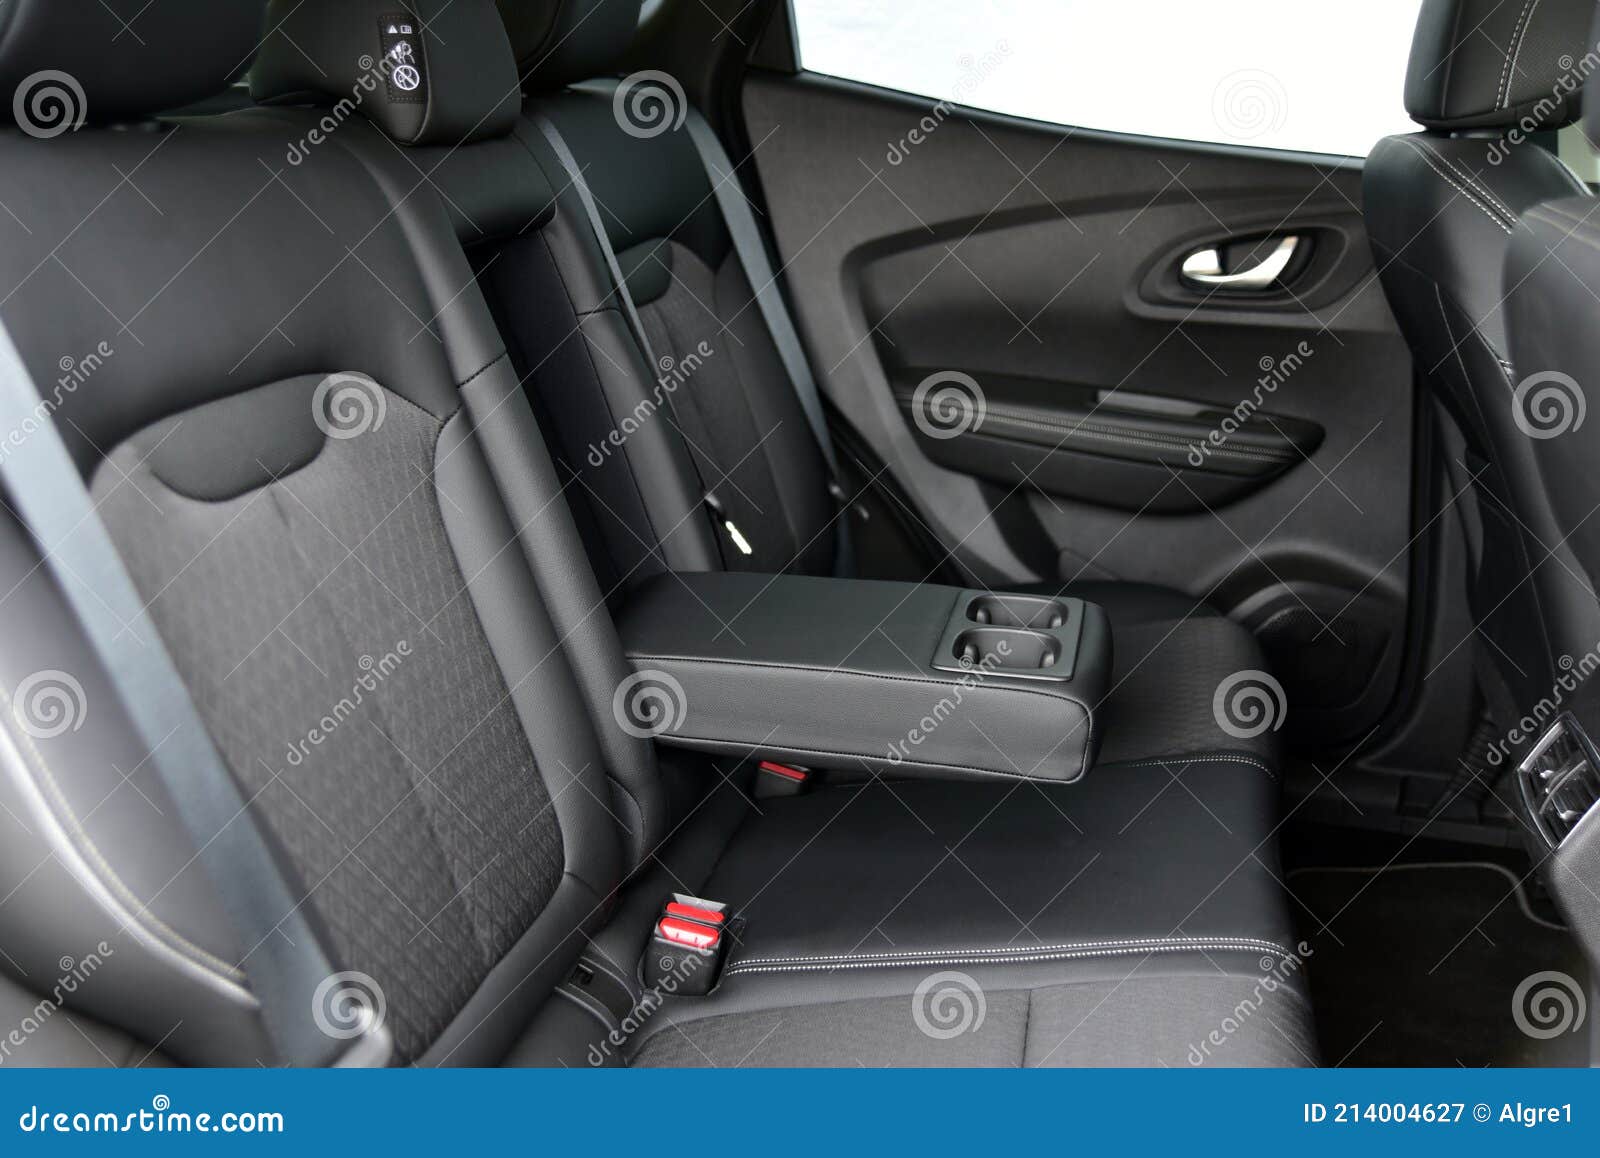 Armlehne Im Auto Mit Becherhalter Für Die Hintere Sitzreihe Stockbild -  Bild von fahrzeug, schalthebel: 214004627